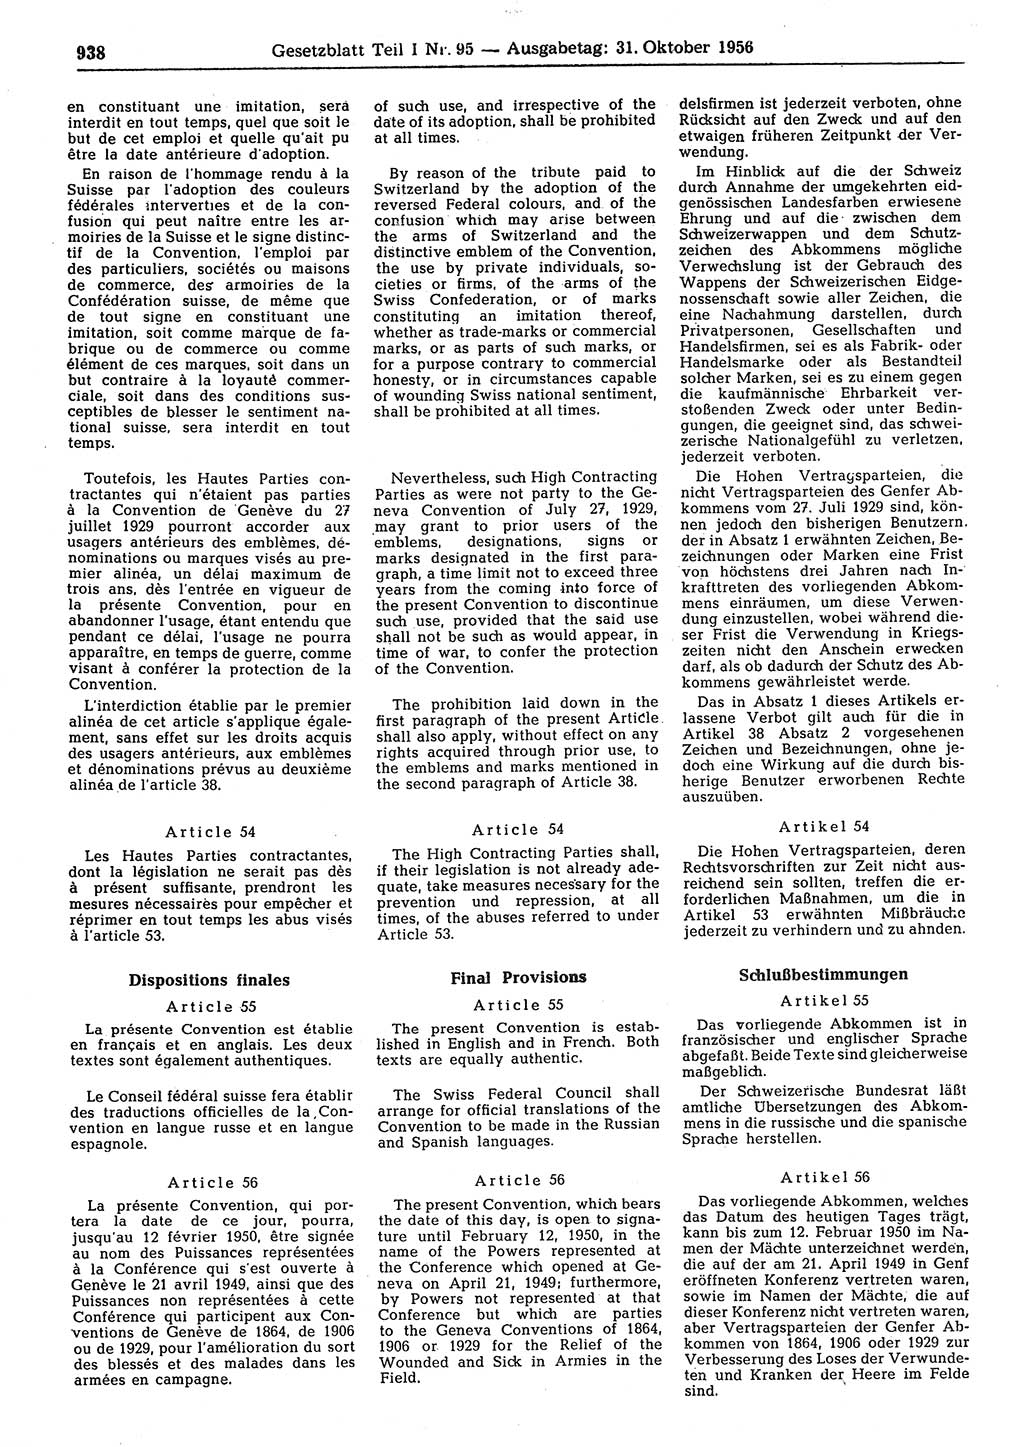 Gesetzblatt (GBl.) der Deutschen Demokratischen Republik (DDR) Teil Ⅰ 1956, Seite 938 (GBl. DDR Ⅰ 1956, S. 938)